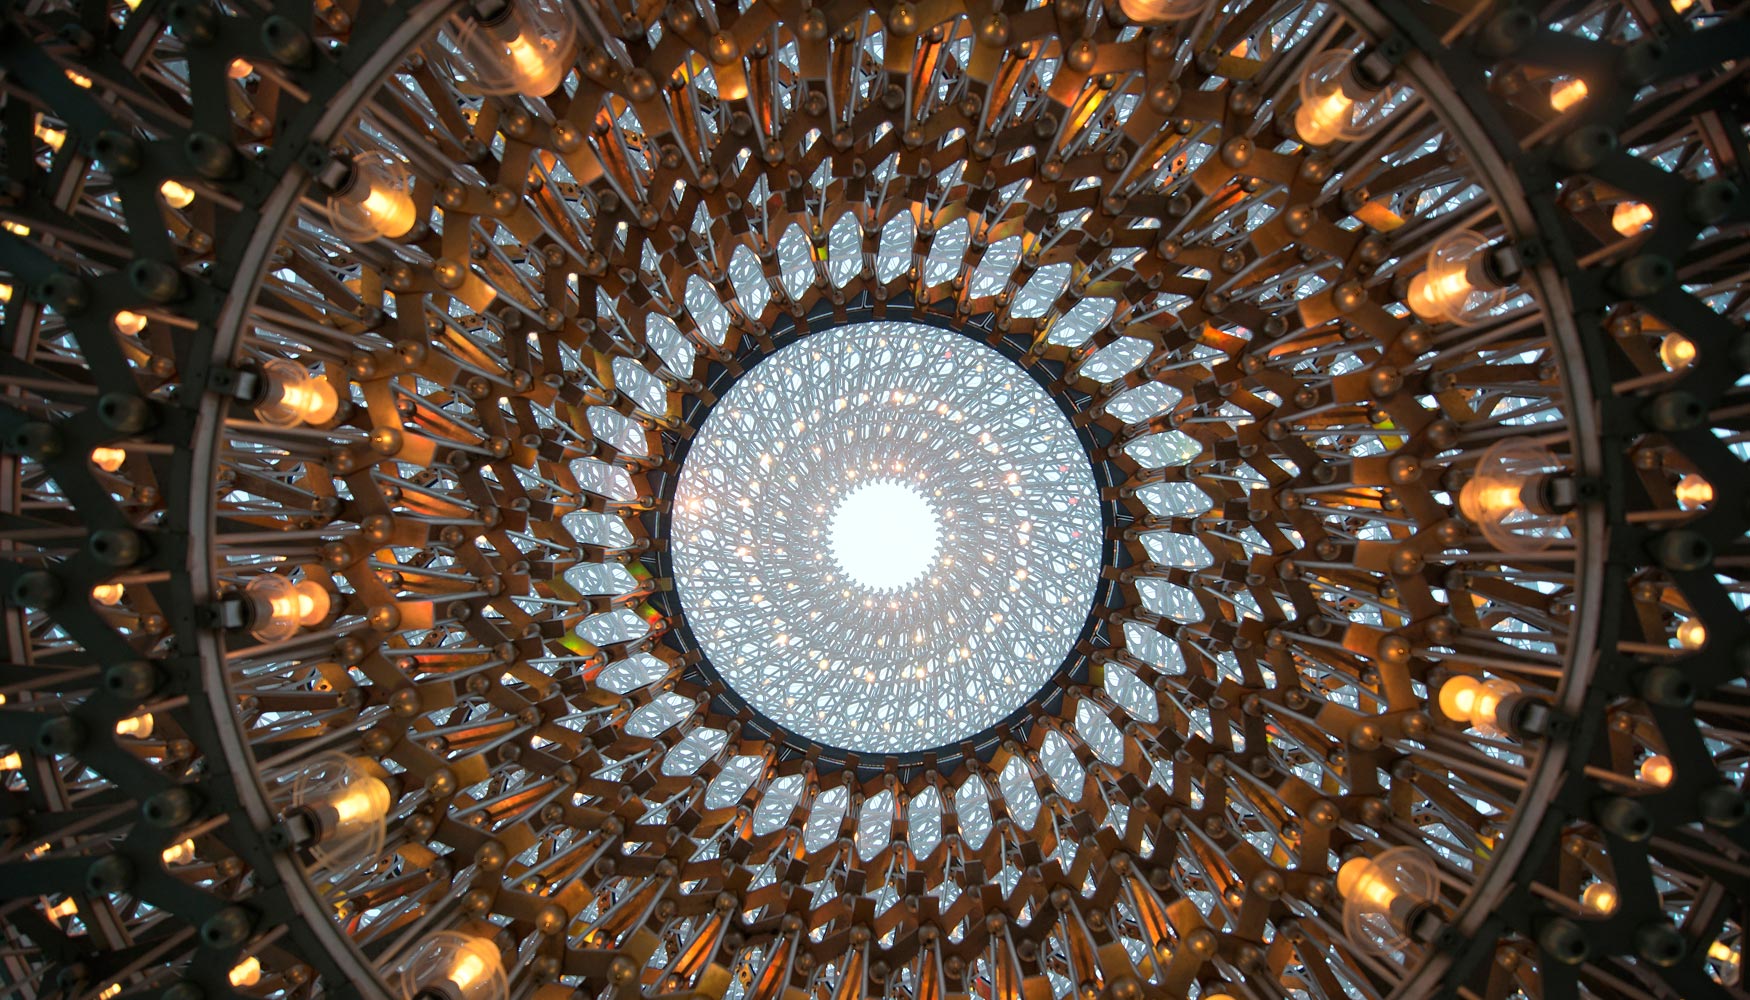 Vista de la colmena desde el interior del cubo, iluminada por leds. Foto: Kew Gardens